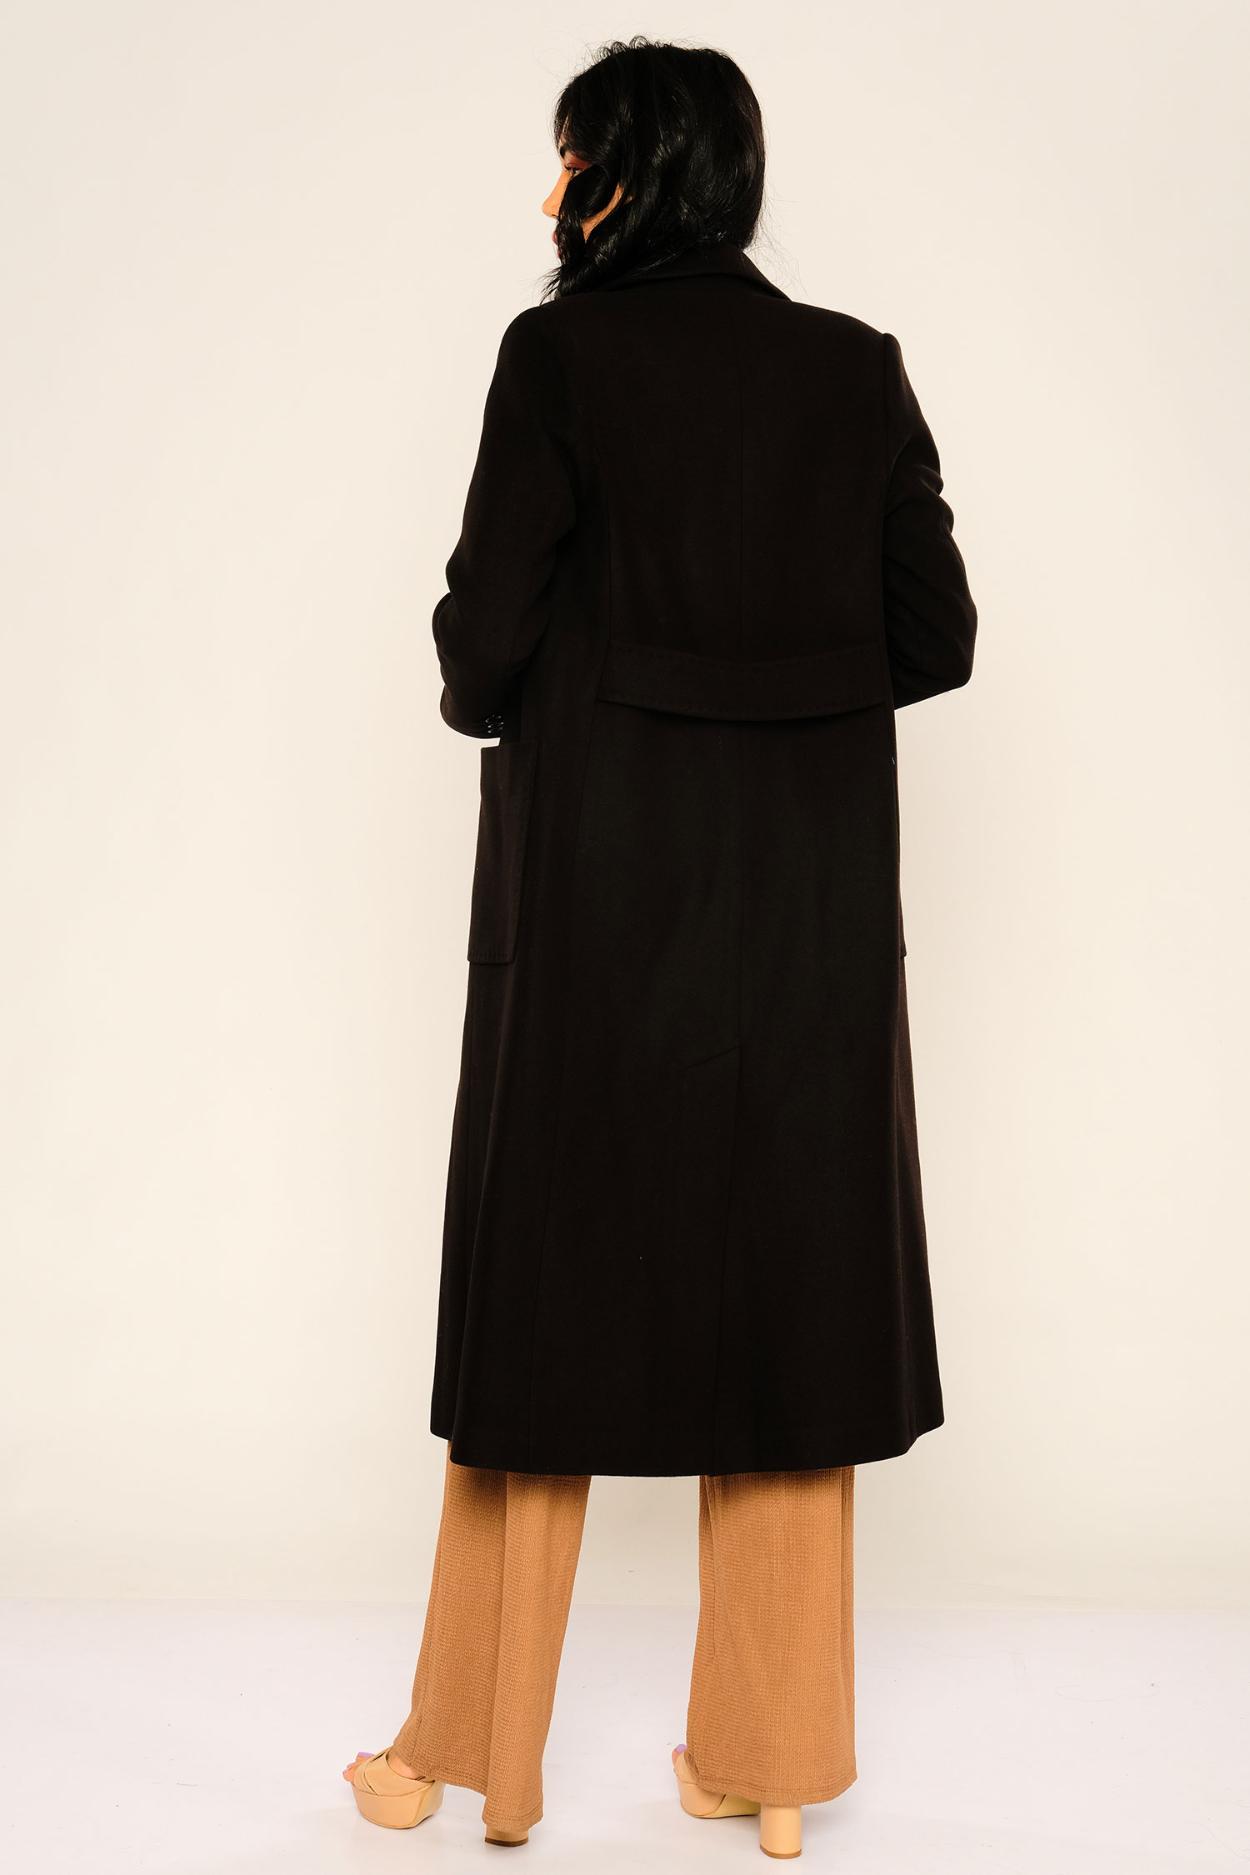 Dolce Bella Knee Lenght Street Wear Woman Coats|Fimkastore.com: Online ...